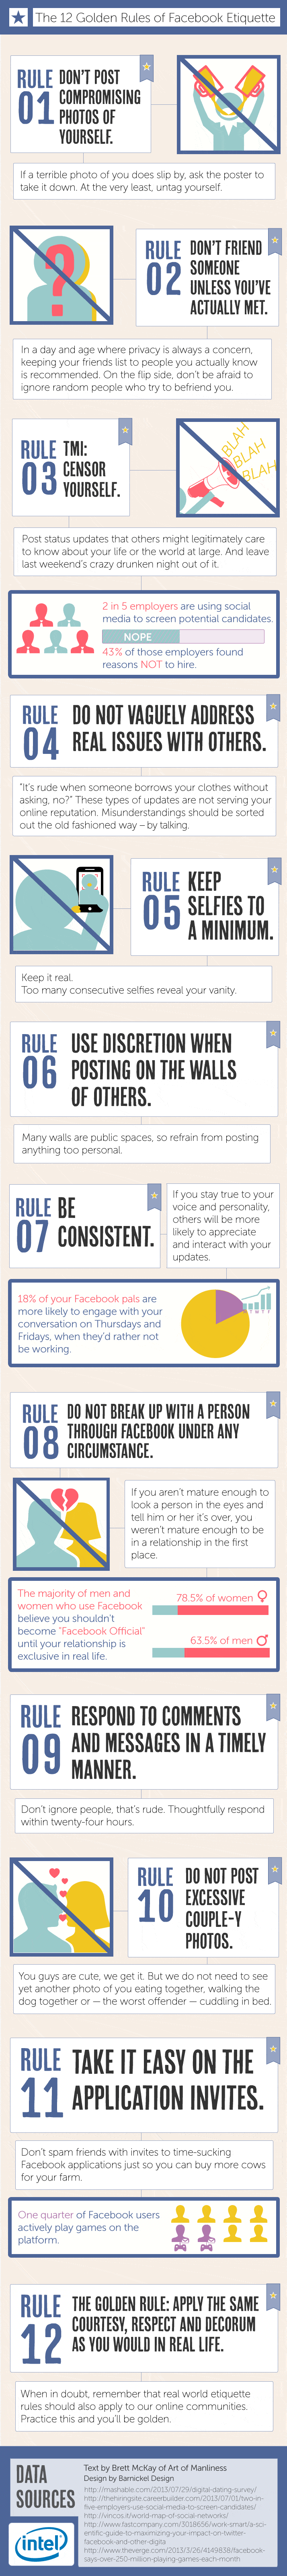 12-golden-rules-of-facebook-etiquette_52c58ffb3f4d0